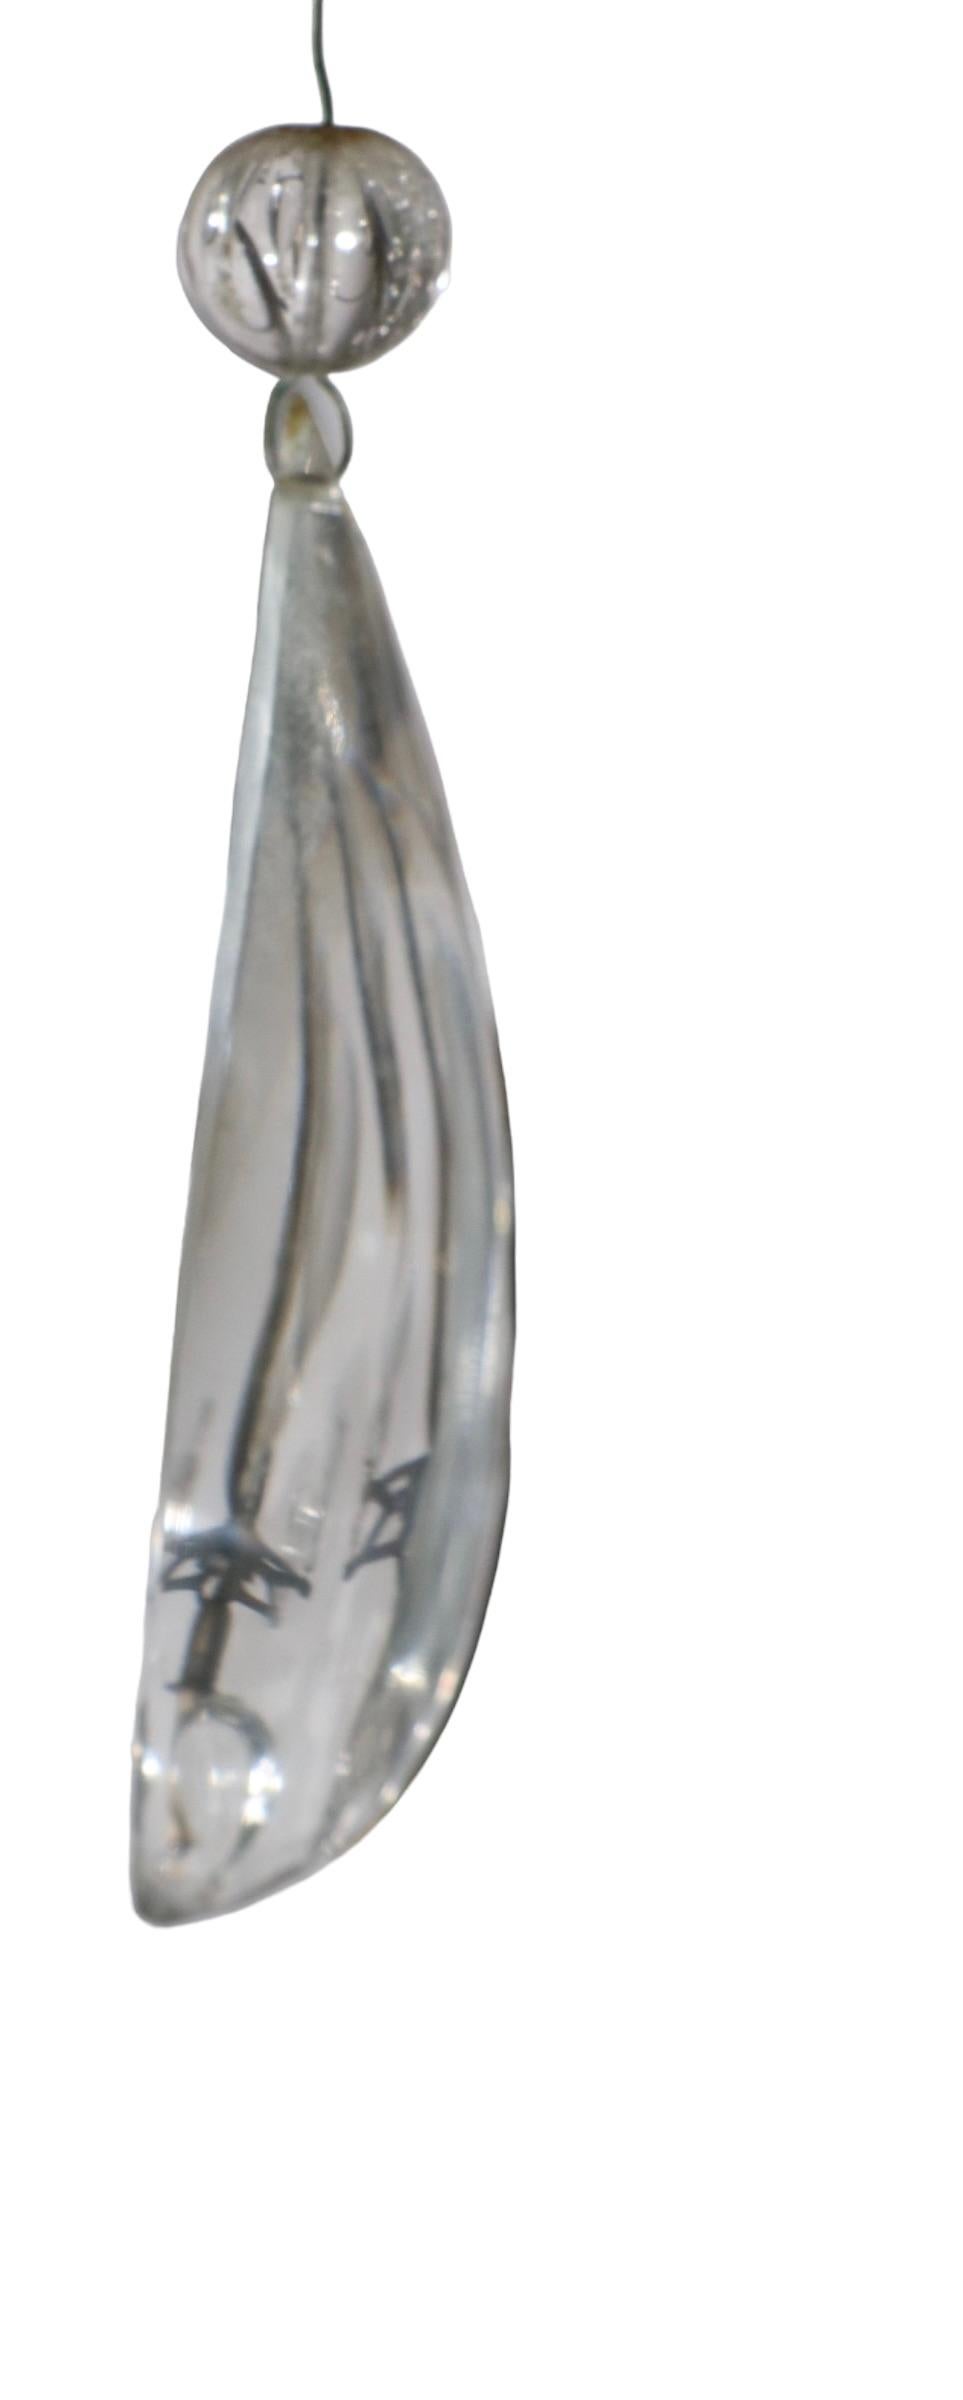 Spectaculaire luminaire suspendu provenant du détaillant de renommée mondiale, Charles J. Winston. Le lustre présente une structure en laiton massif, garnie de perles de cristal enfilées à la main et habillée de gouttes de cristal facetté et de